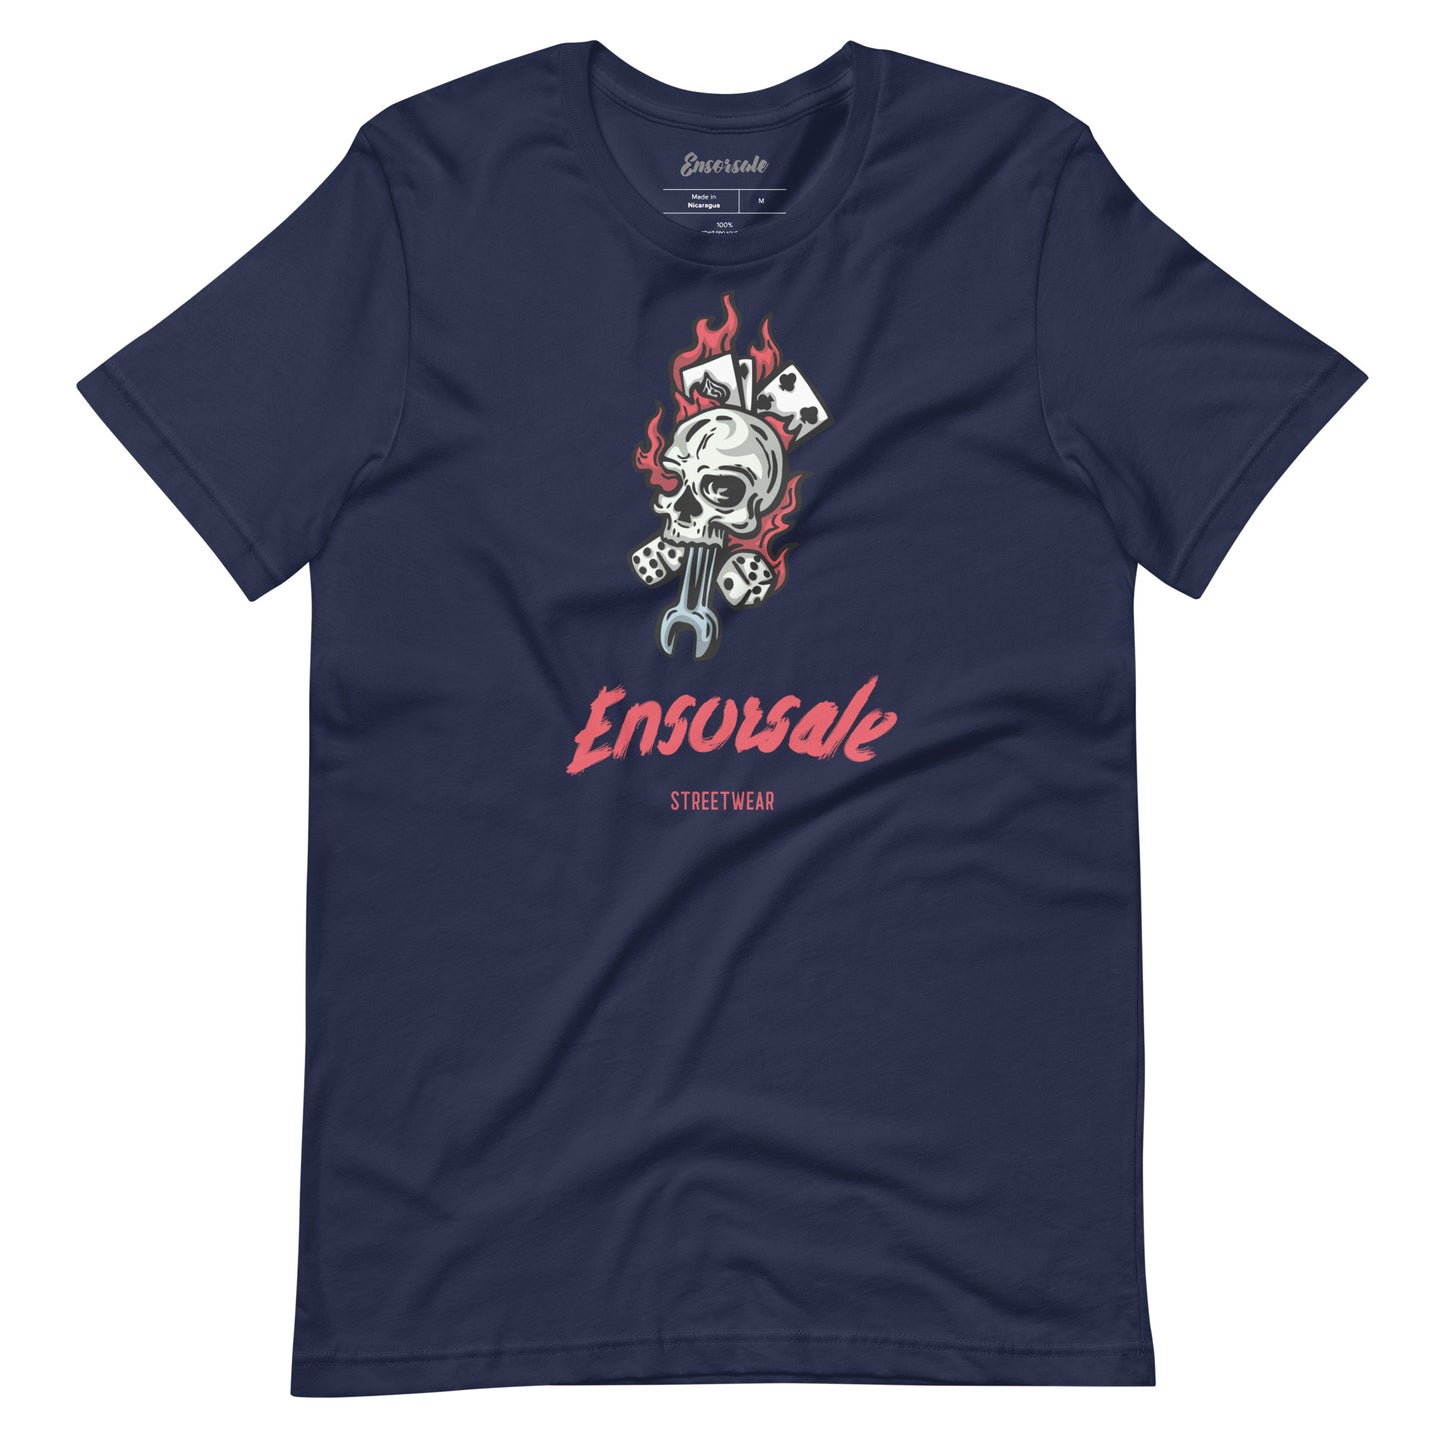 Ensorsale Streetwear T-Shirt